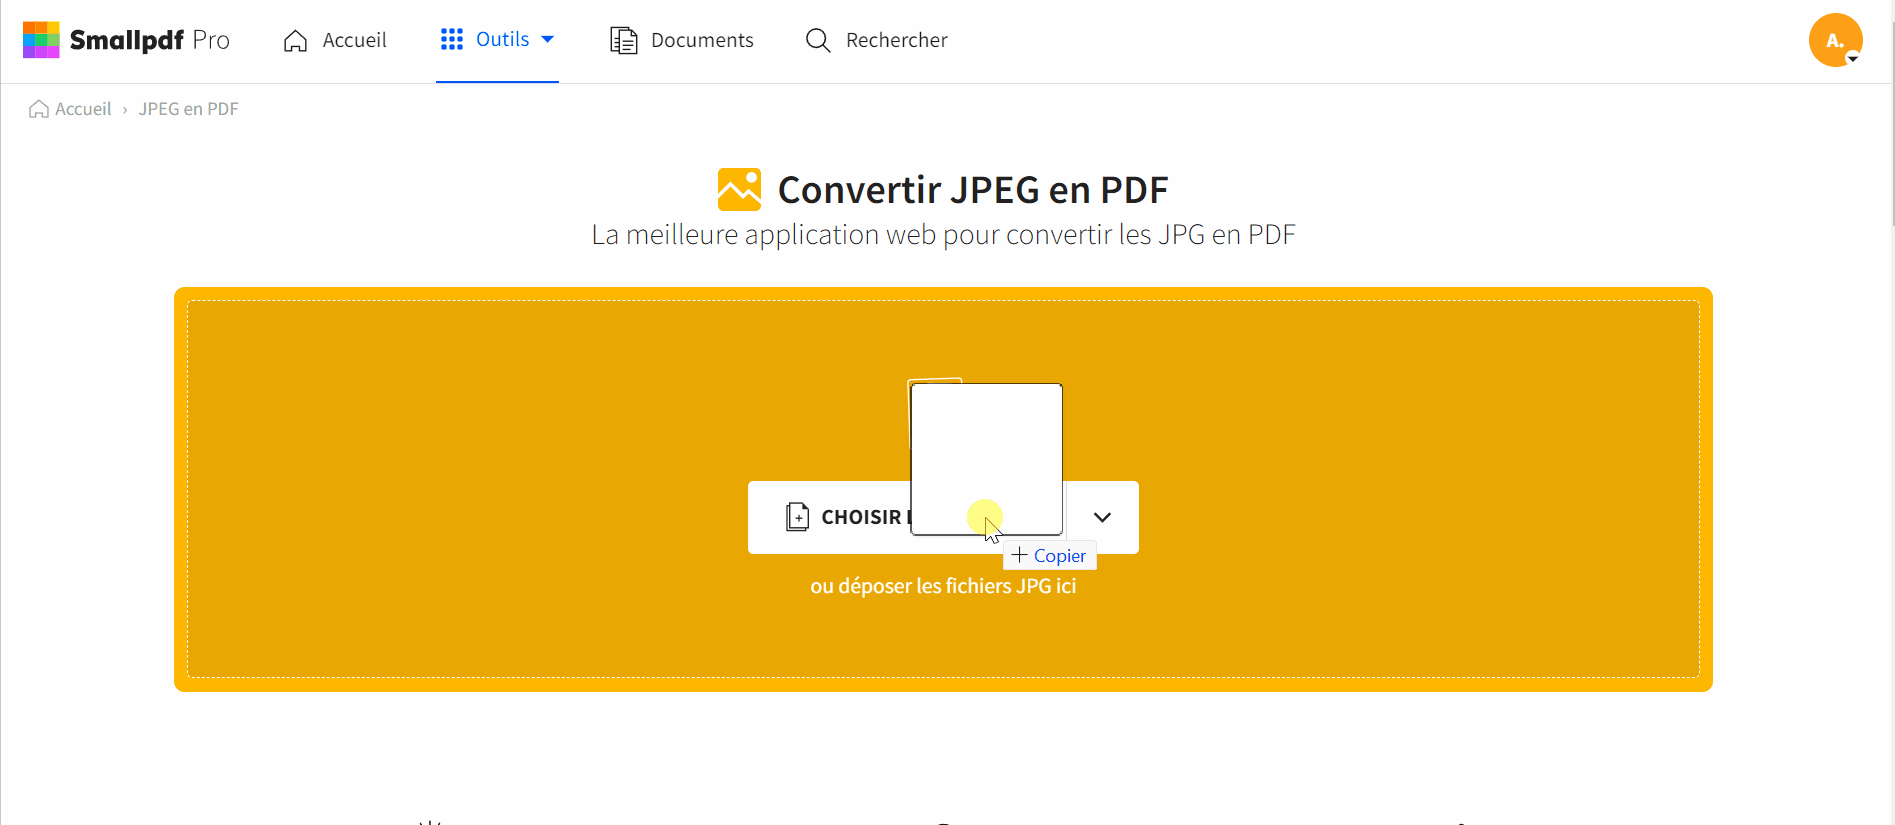 2023-03-08 - Convertir des images JPG en documents Word en ligne gratuitement